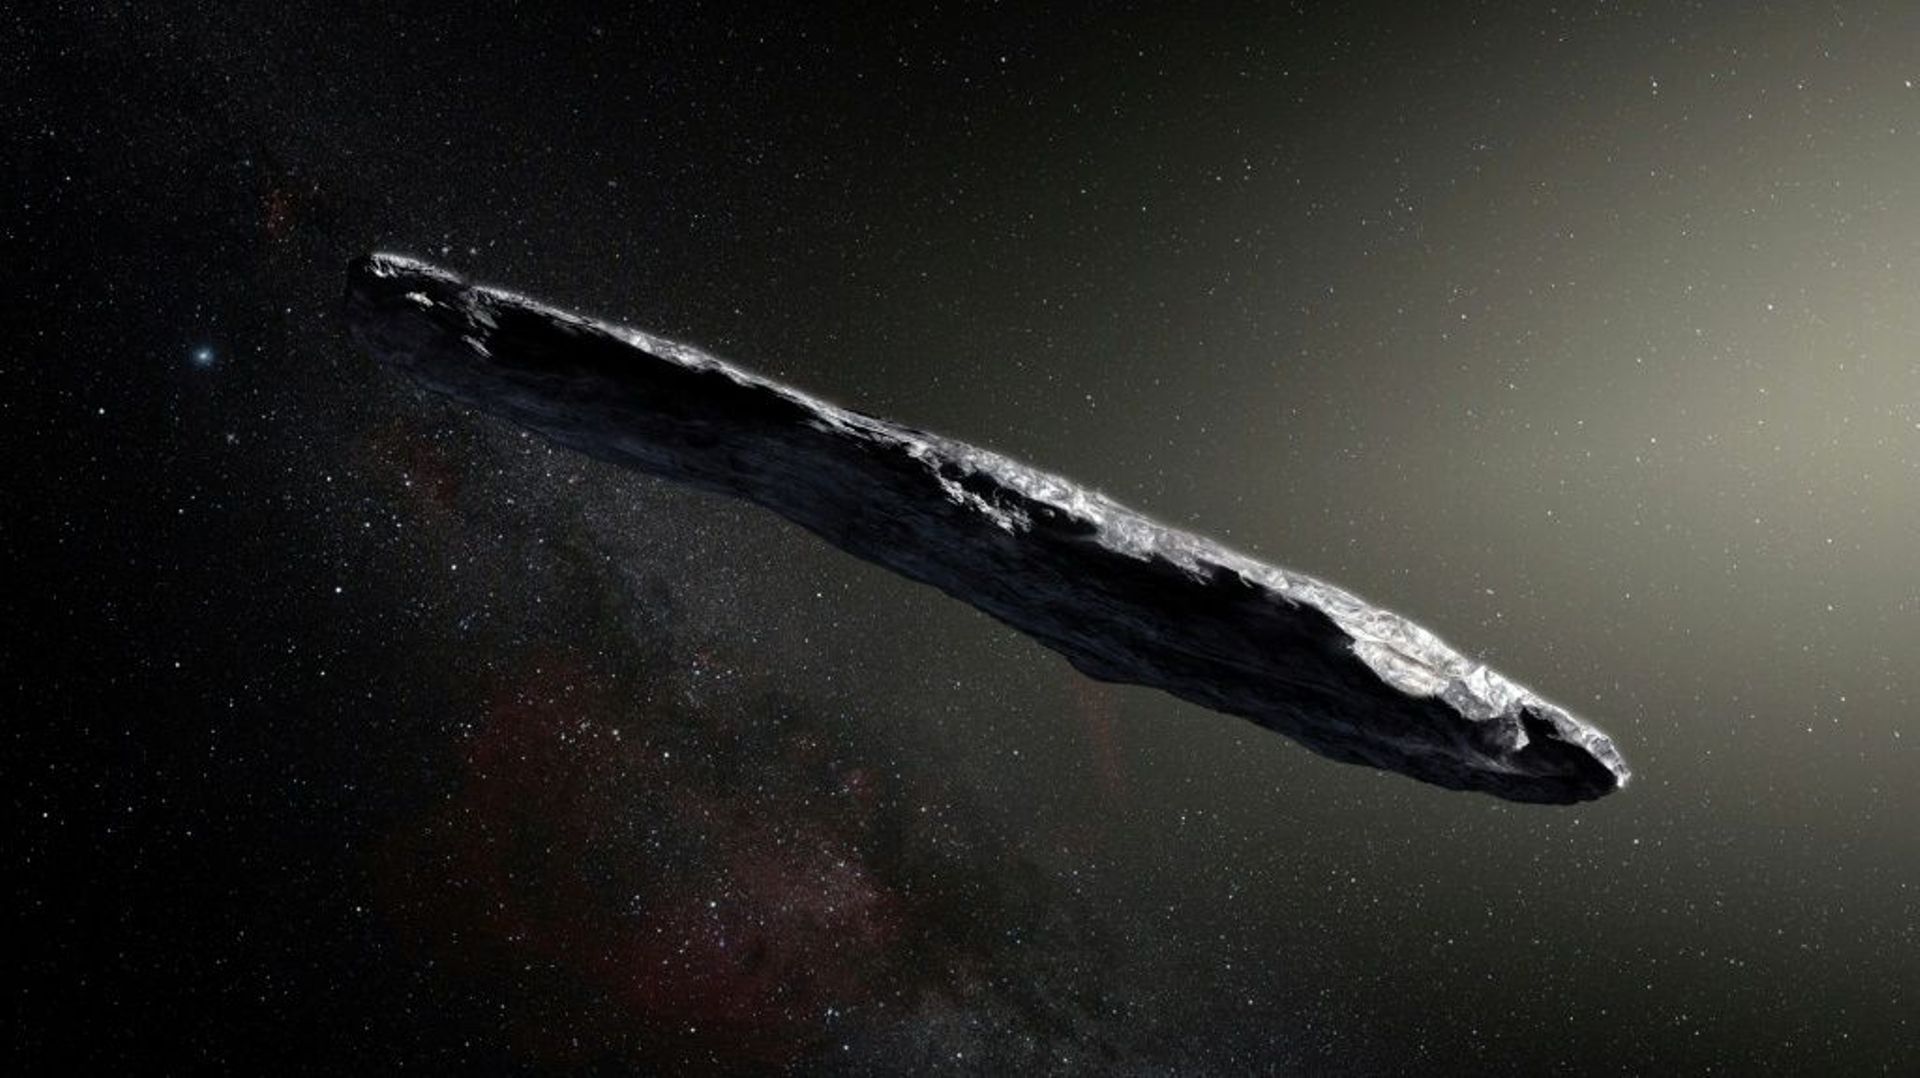 Photo fournie le 20 novembre 2017 par l'Observatoire européen austral (ESO) montrant Oumuamua ("messager" en langue hawaïenne), le curieux bolide interstellaire qui serait une comète et non un asteroïde